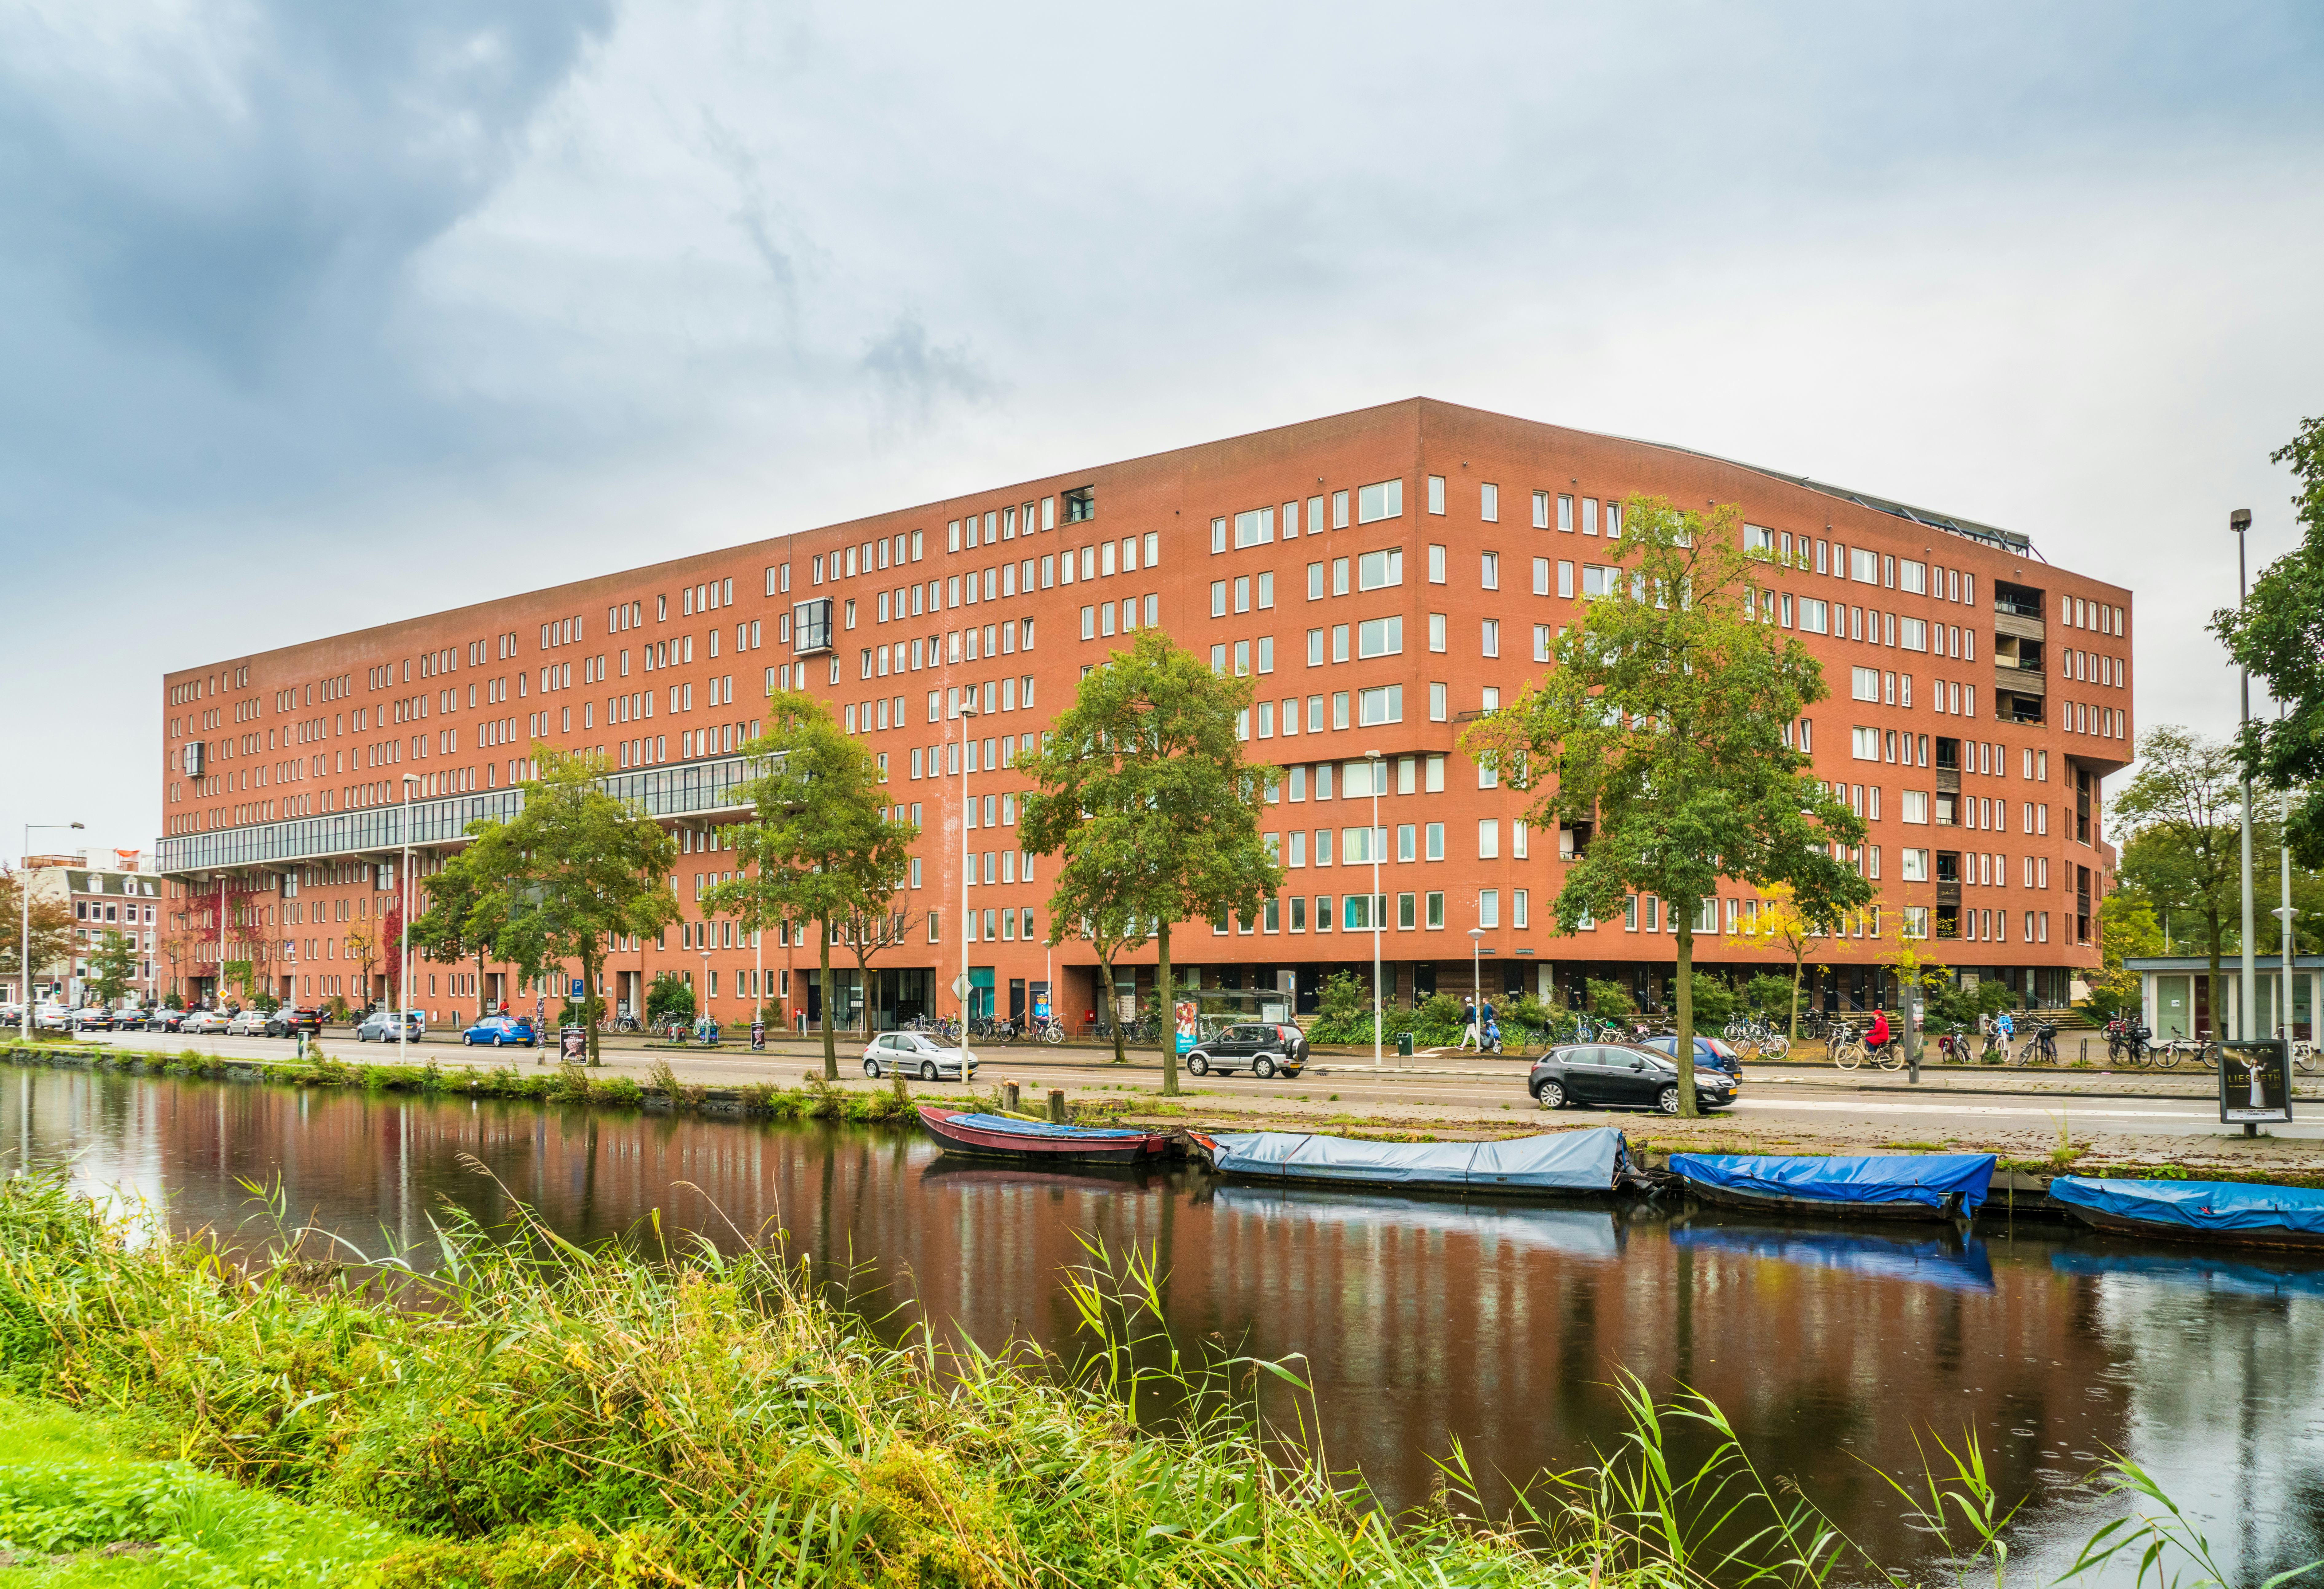 Amsterdam doet koopwoning tot 2025 in de ban